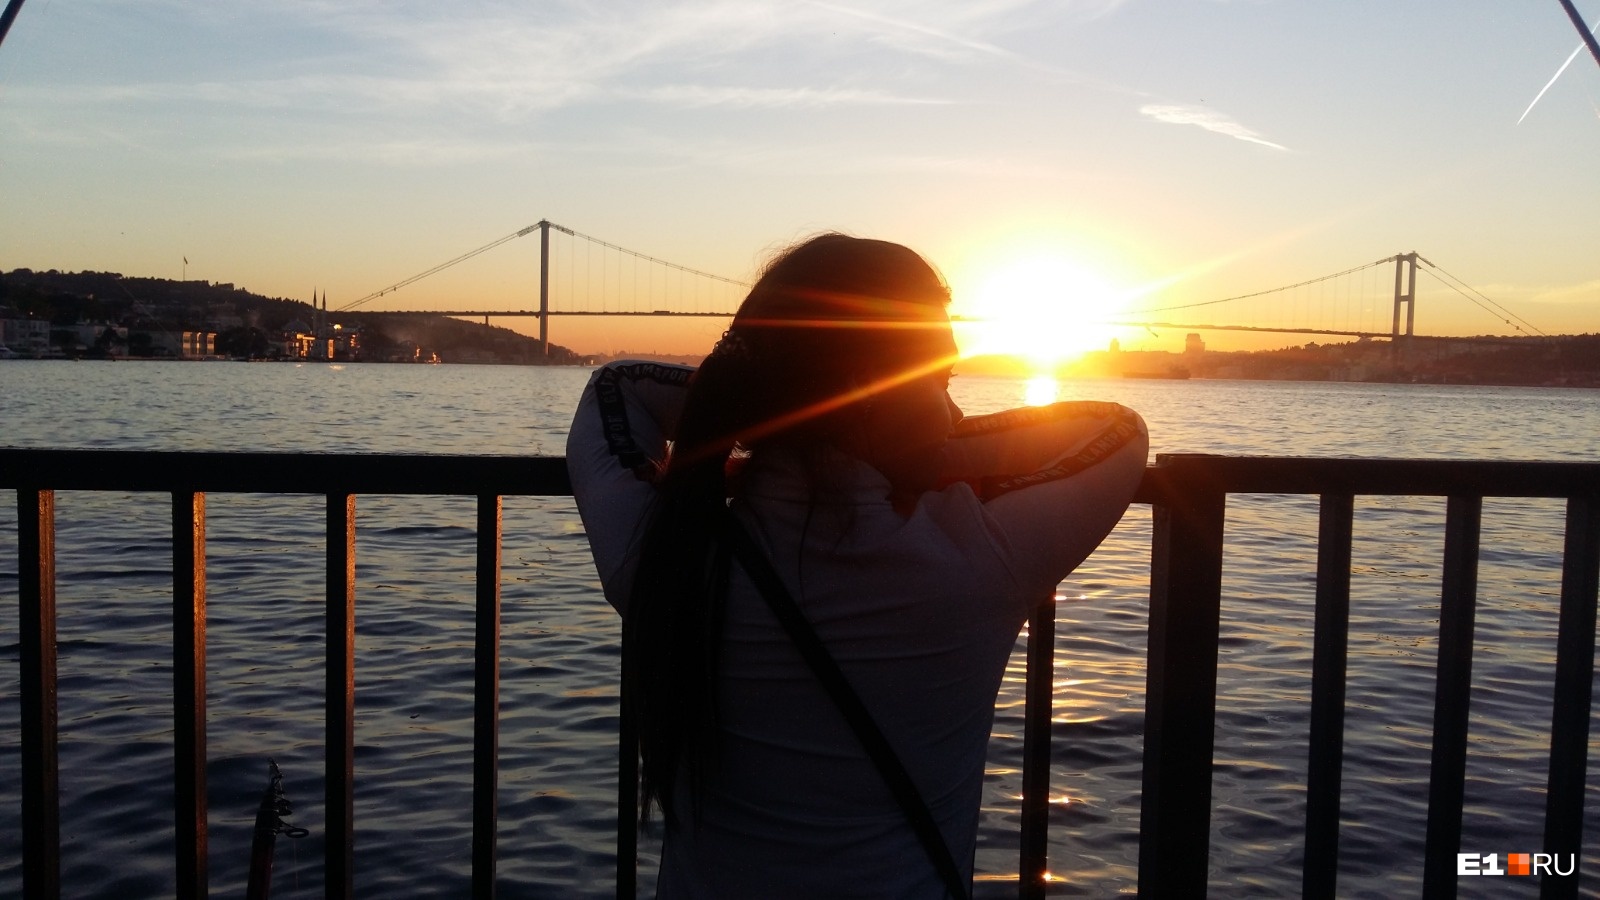 Впервые Анастасия побывала в Стамбуле в 2013 году и сразу влюбилась в этот город